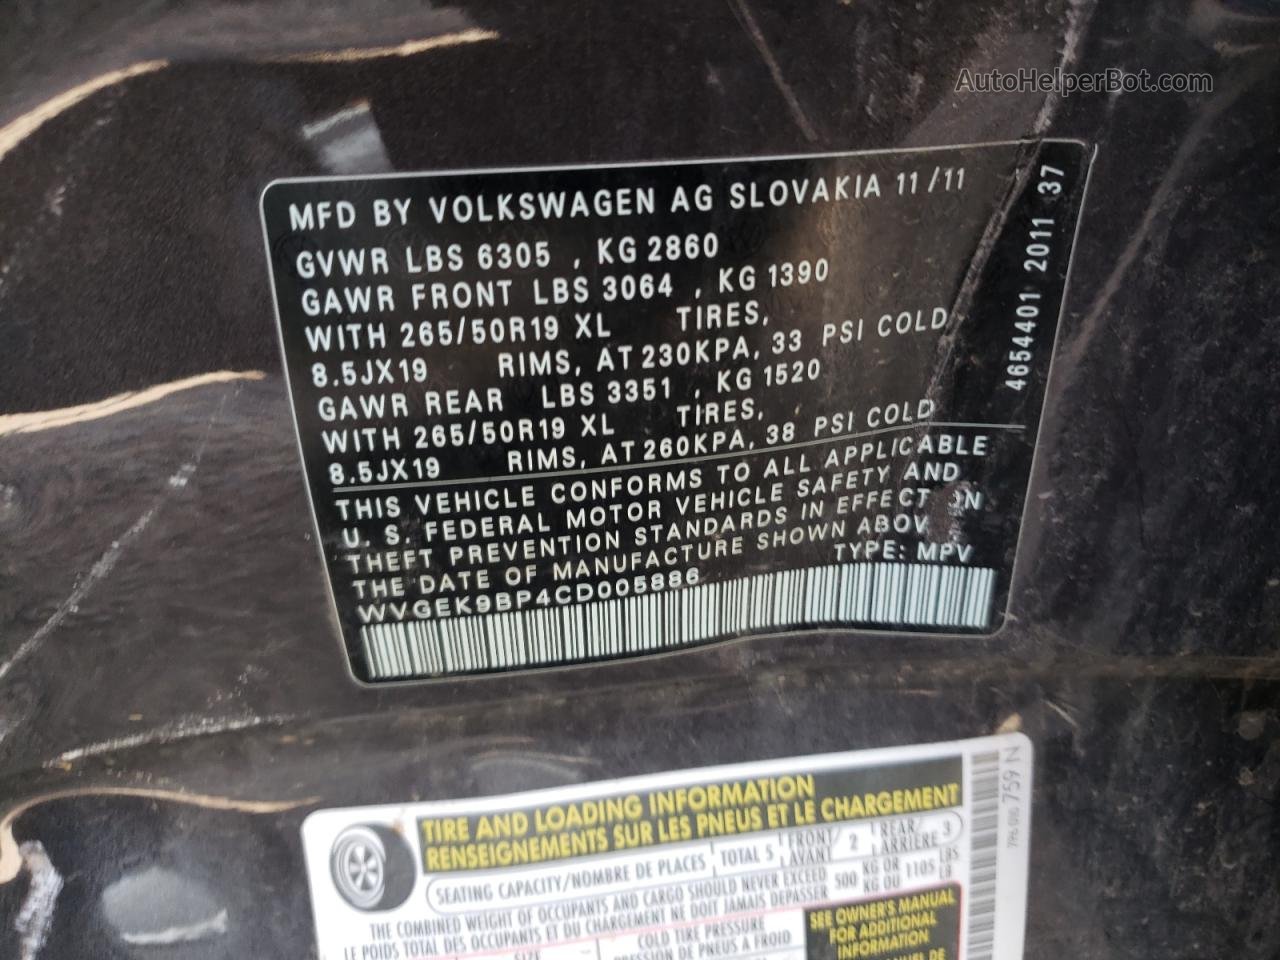 2012 Volkswagen Touareg V6 Tdi Угольный vin: WVGEK9BP4CD005886